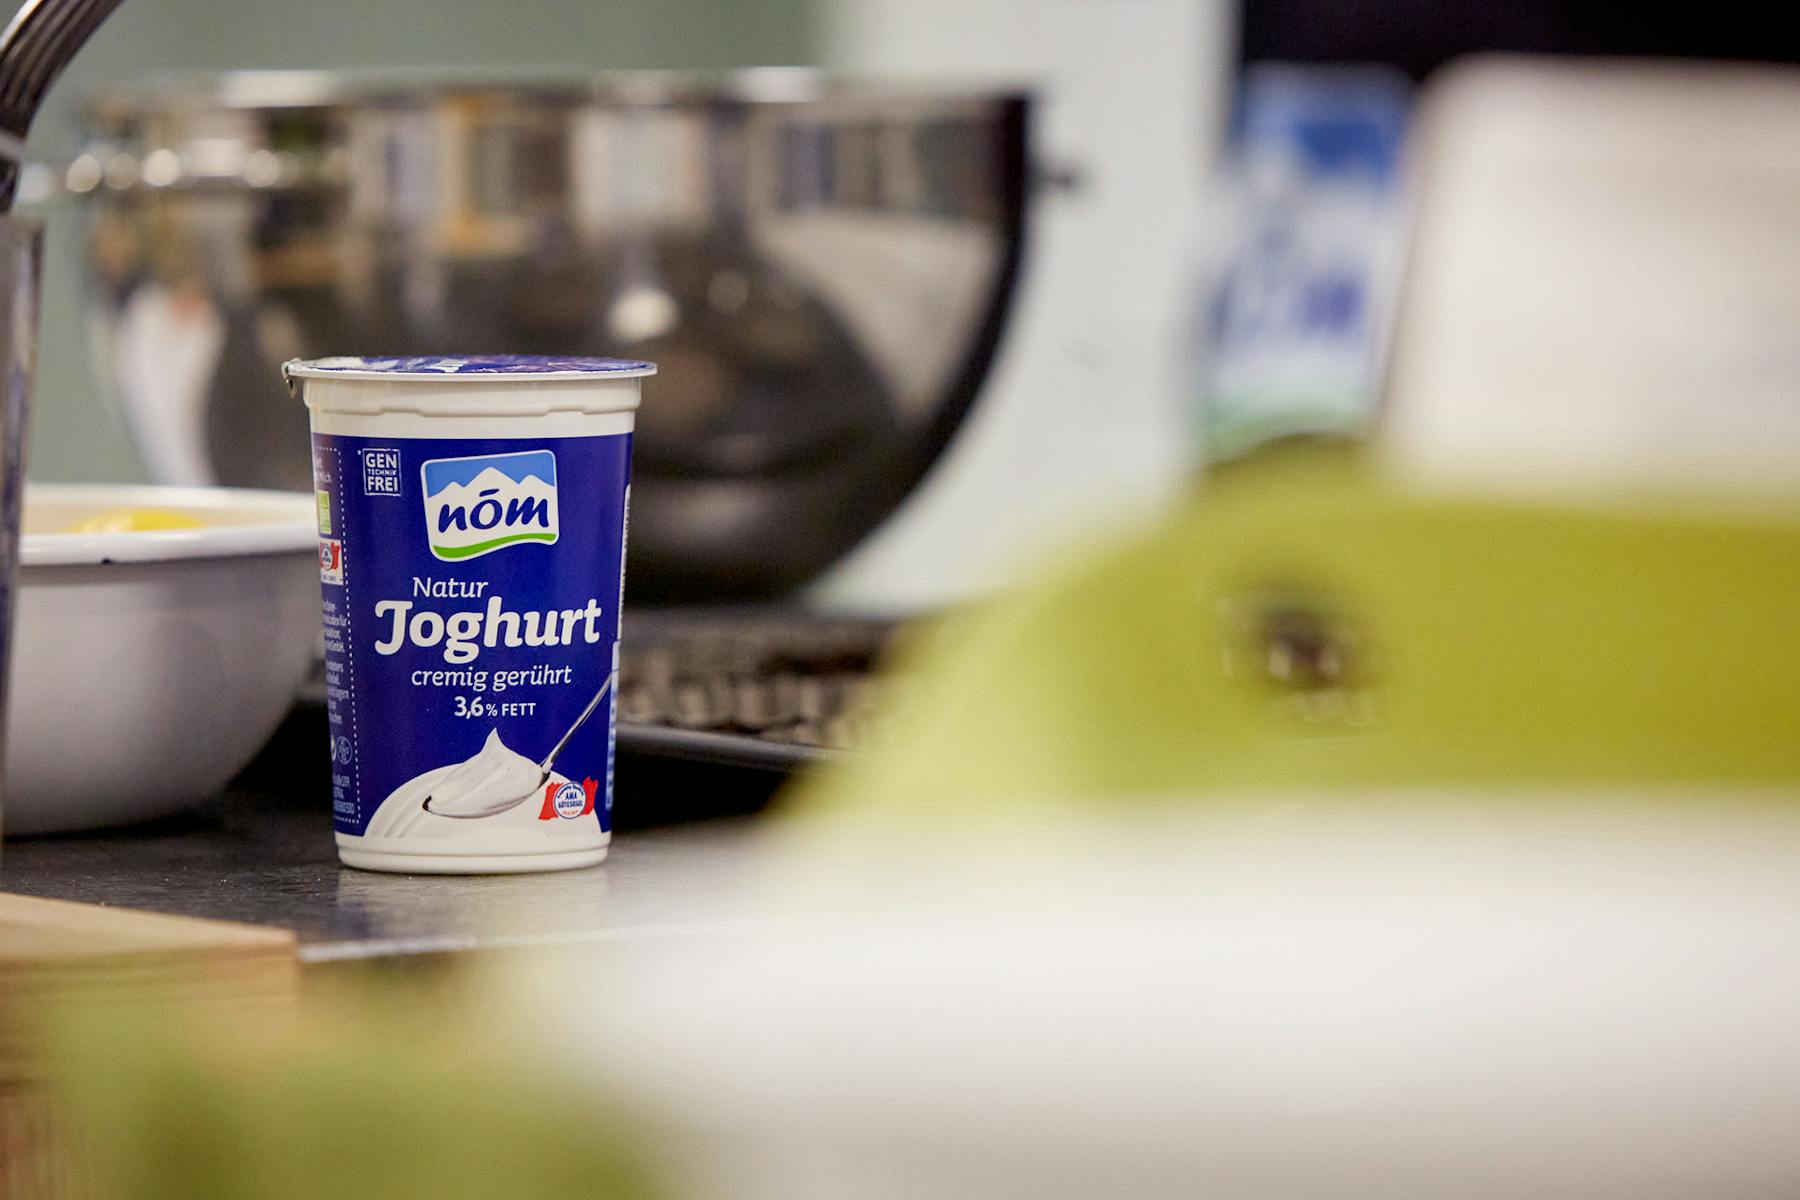 NÖM Natur Joghurt auf Arbeitsplatte mit Küchenutensilien